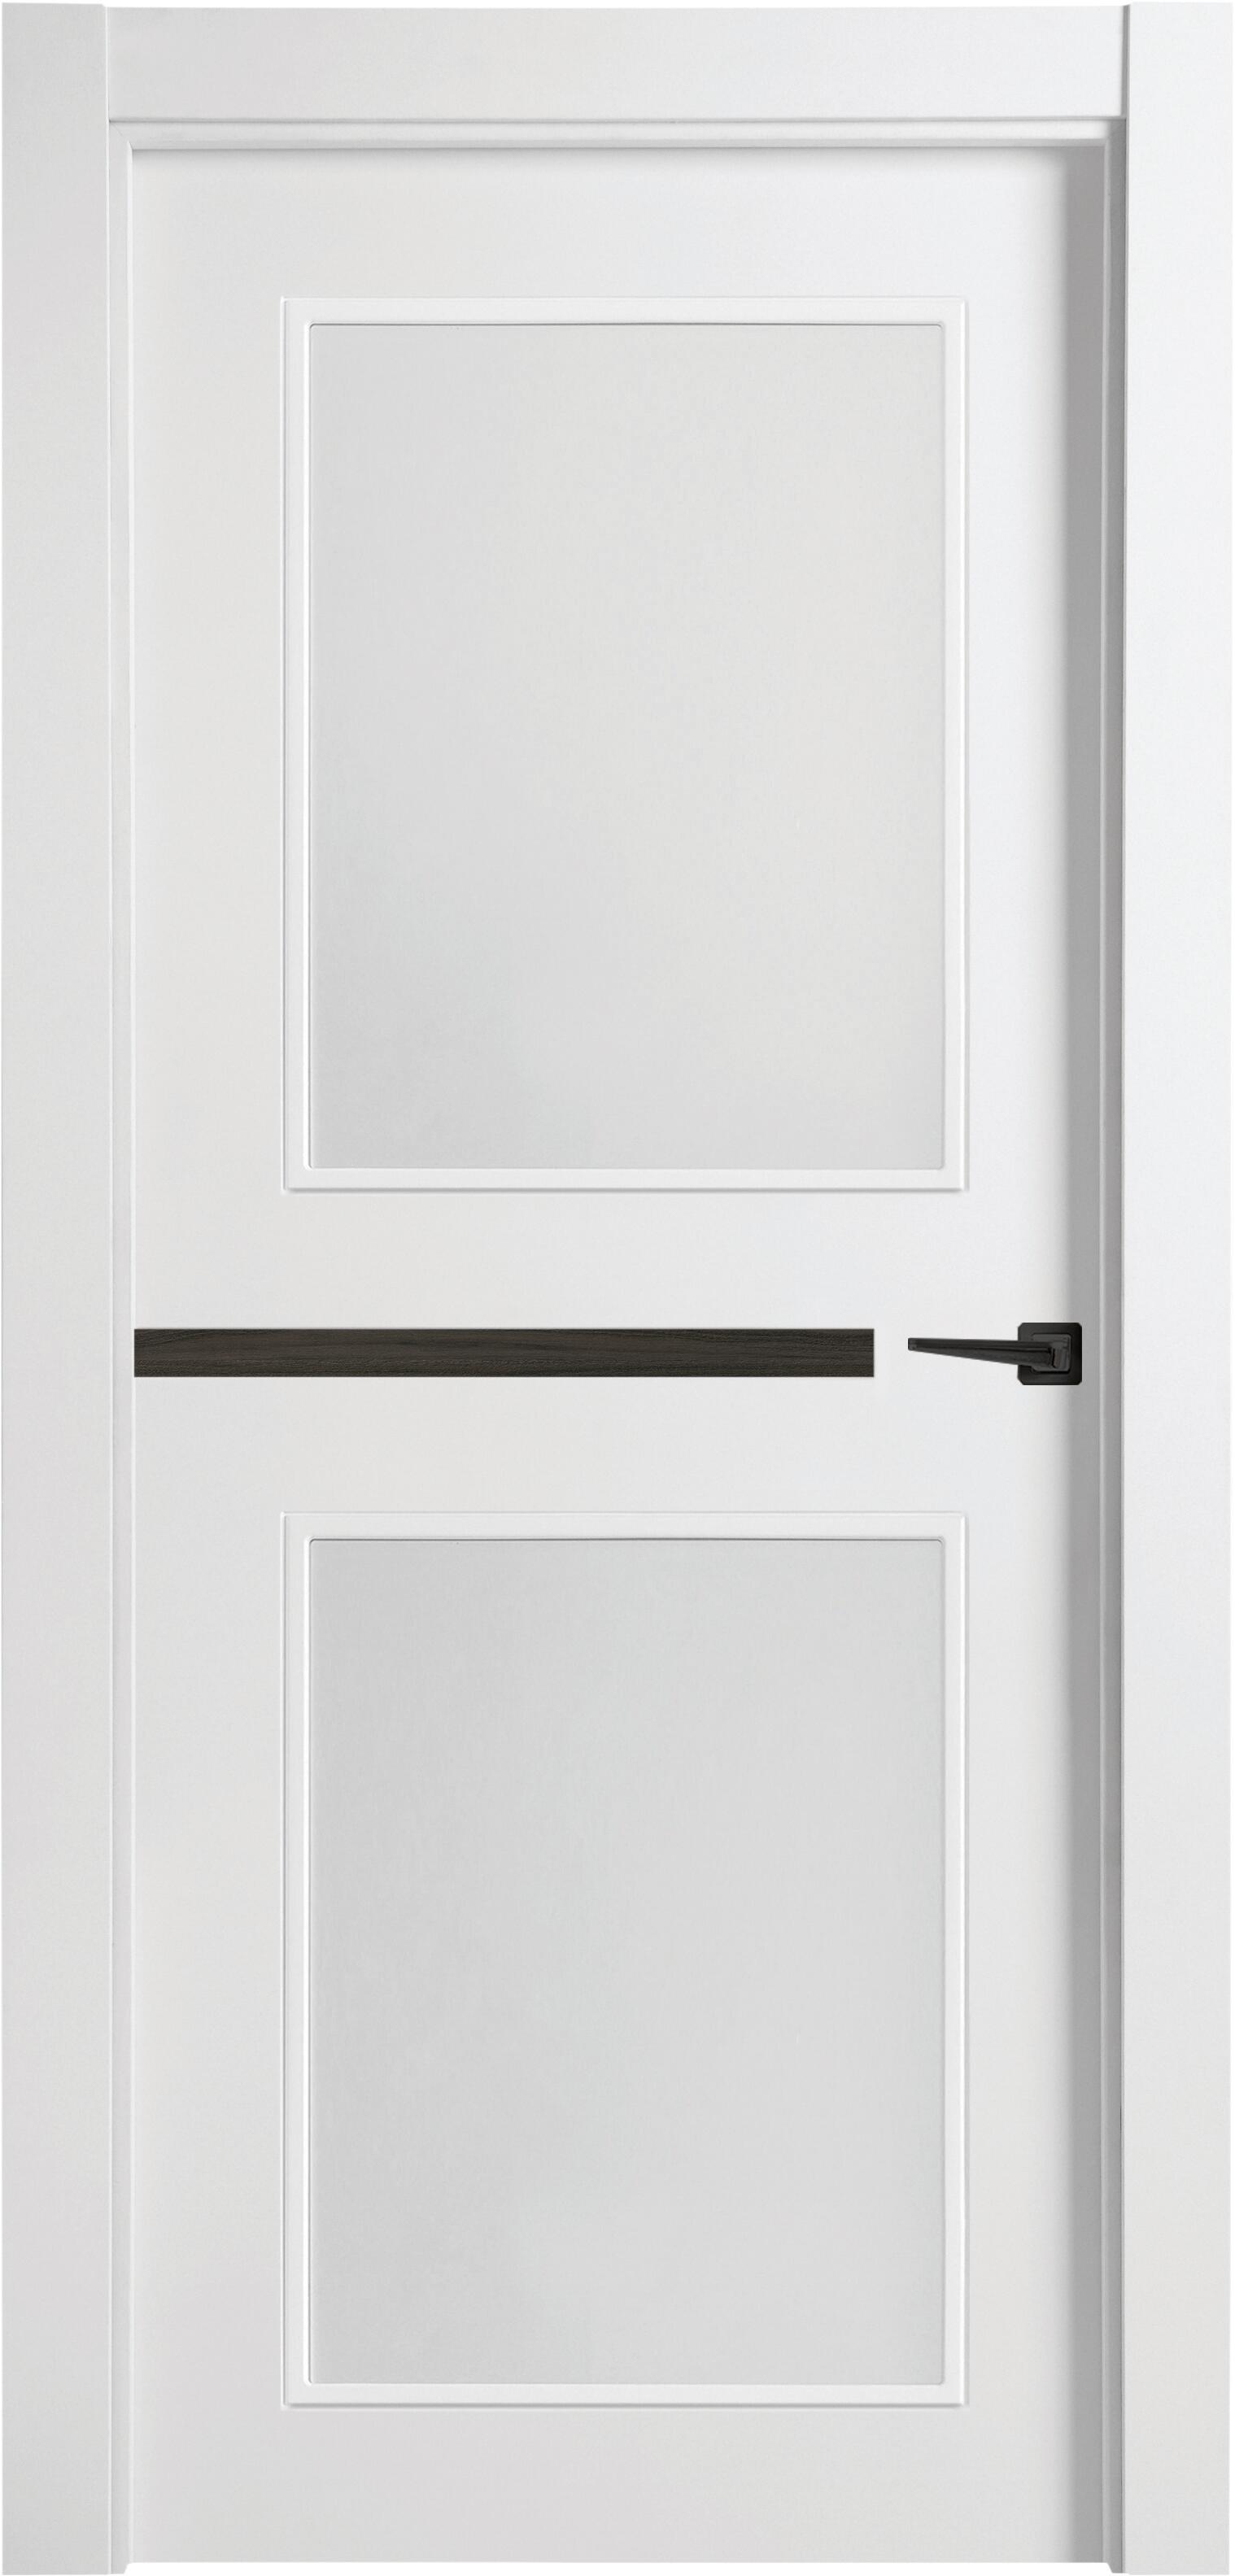 Puerta denver carbón blanco apertura izquierda con cristal 11x82,5 cm